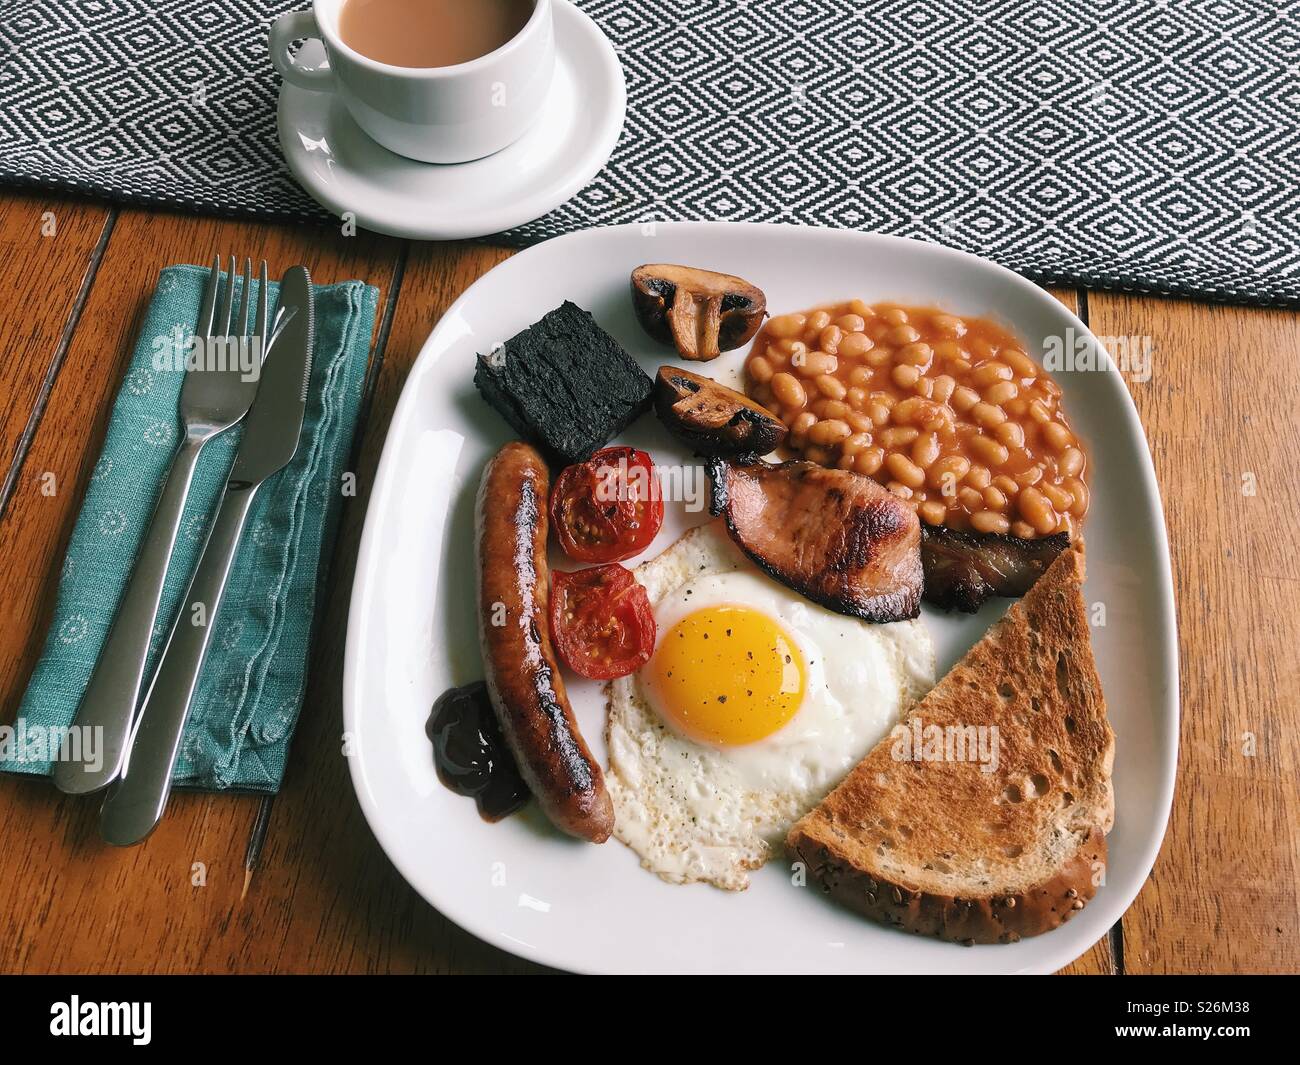 Un completo desayuno inglés casero, con salchichas, tomates, morcilla, setas, alubias, tostadas, salsa marrón, un huevo frito, y una taza de té. Foto de stock